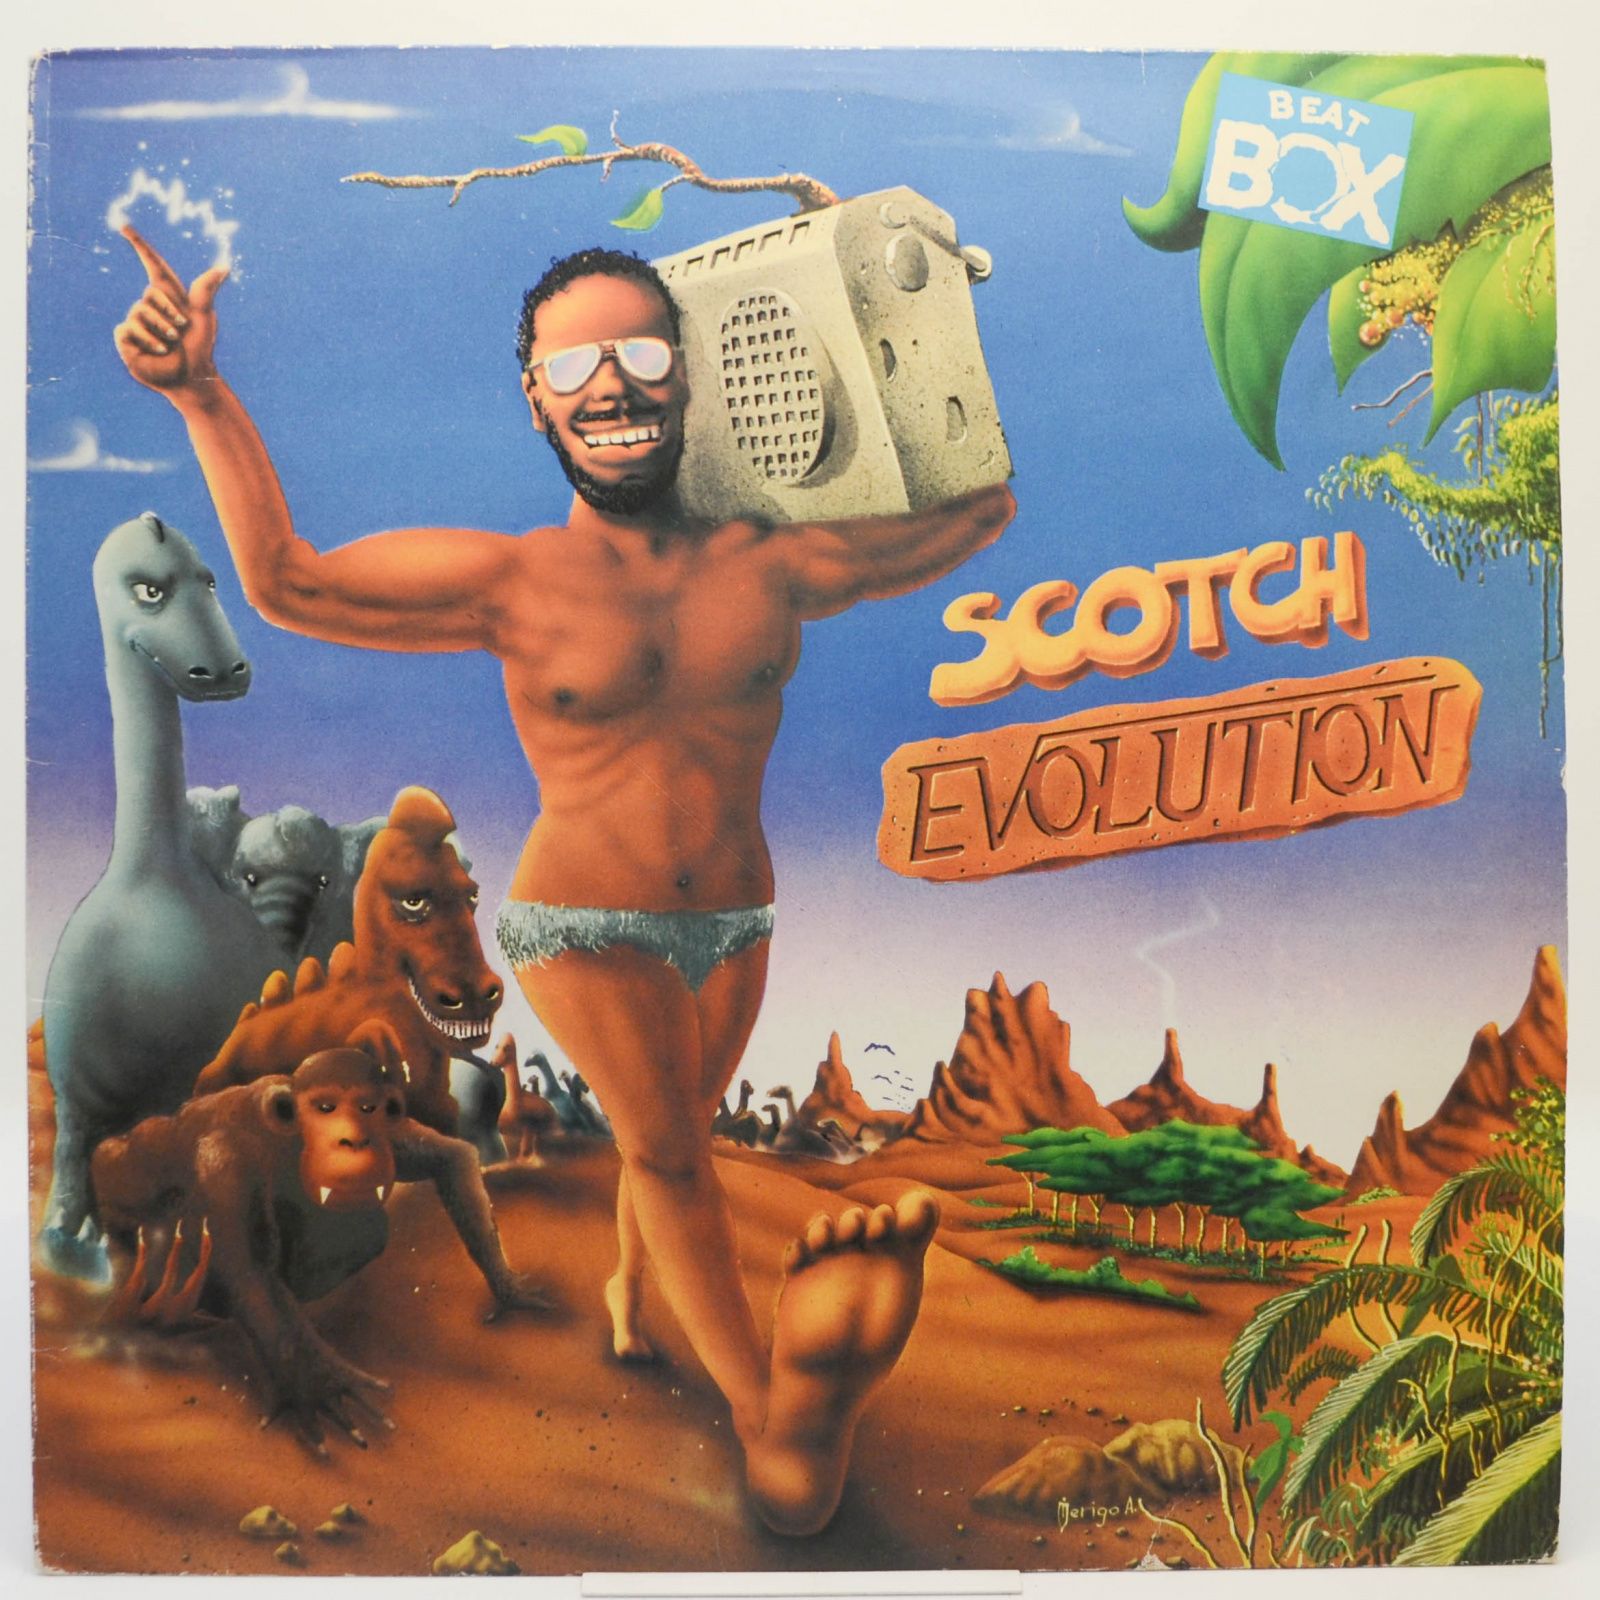 Scotch — Evolution, 1985